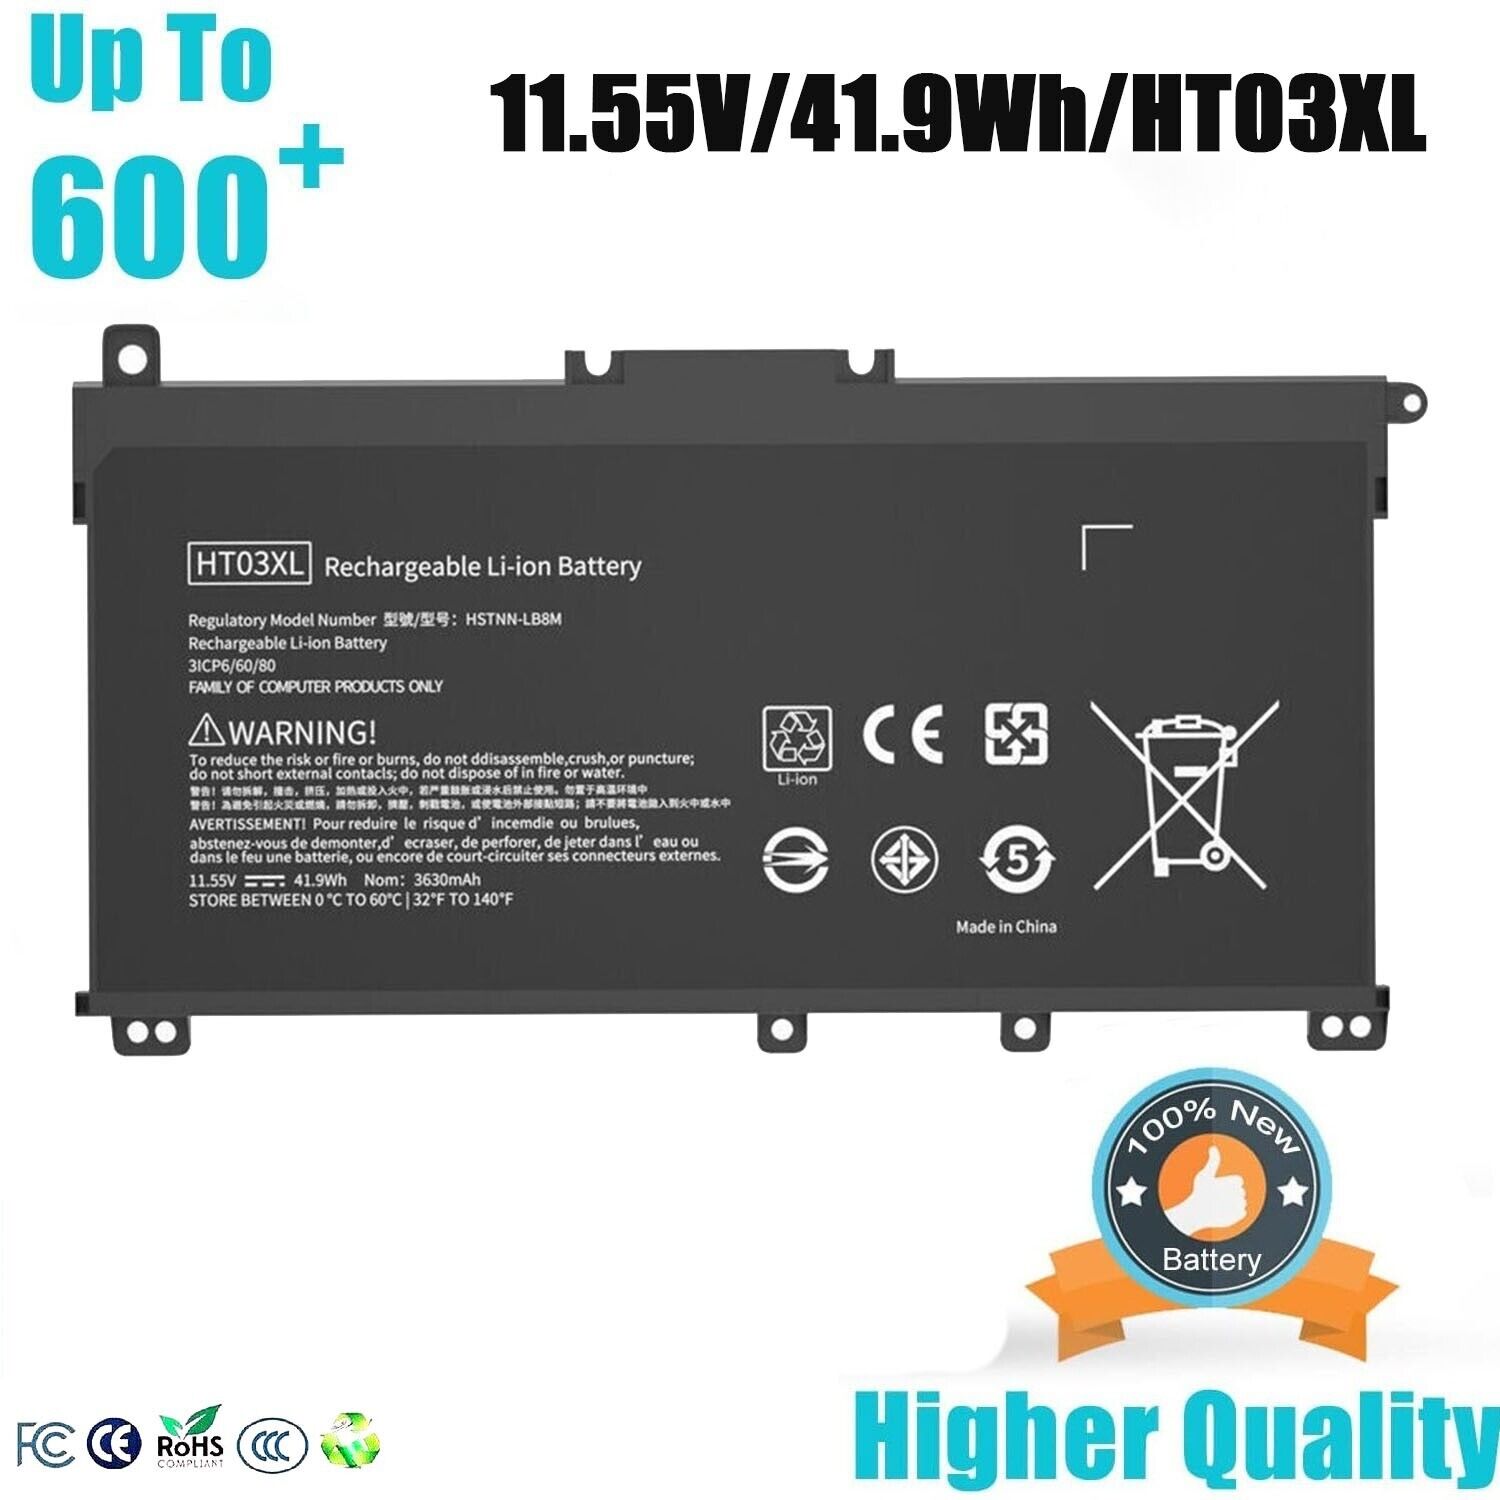 HT03XL🧡 Battery for HP Pavilion L11421-2C2 L11119-855 14-CE 14-CF 15-CS 15-DA